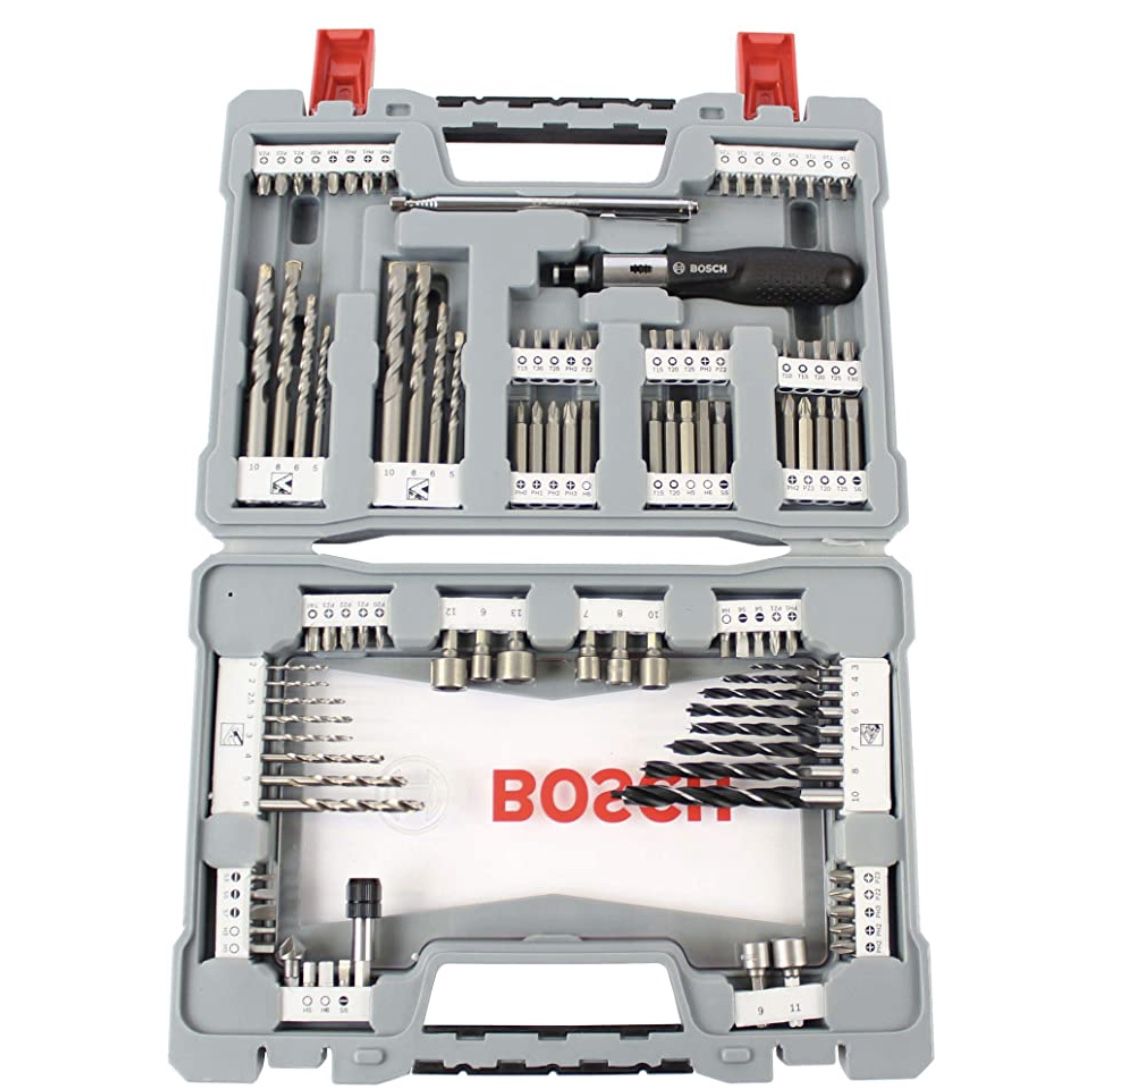 Bosch Professional 105 teiliges Bits und Bohrer Premium X Line Set für 43,82€ (statt 50€)